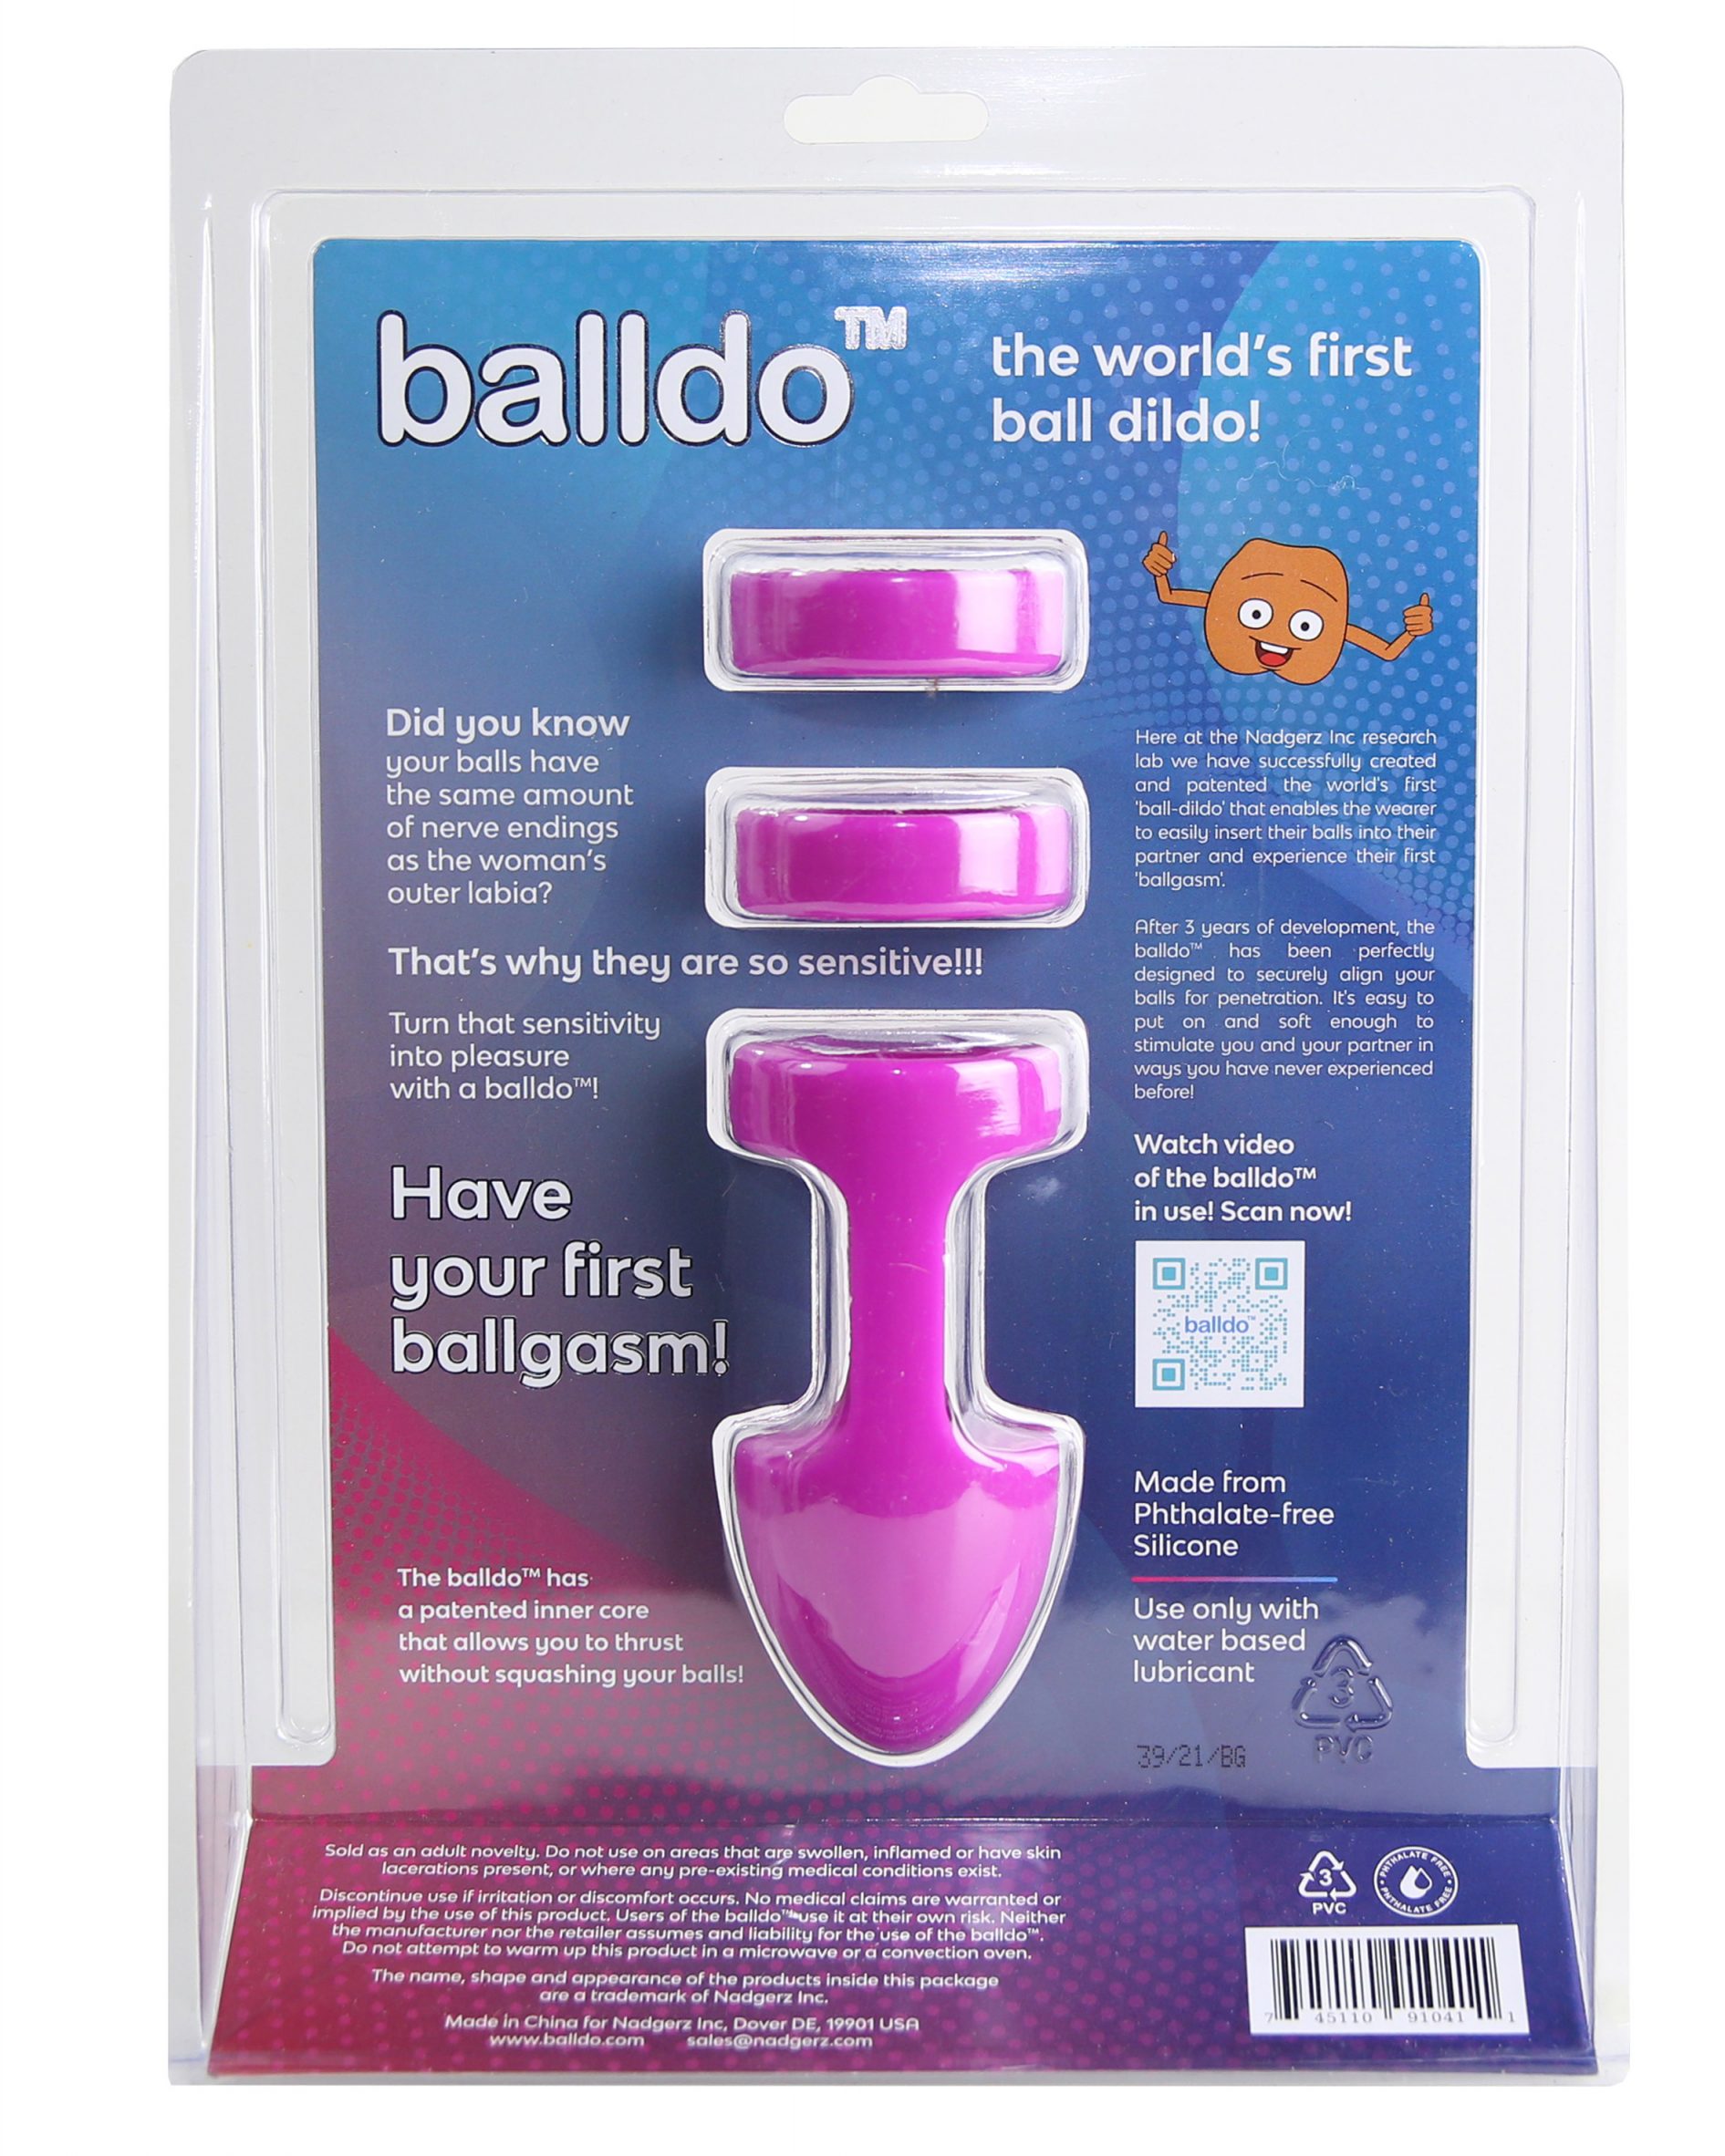 Balldo sex toy turns testicles into a dildo photo